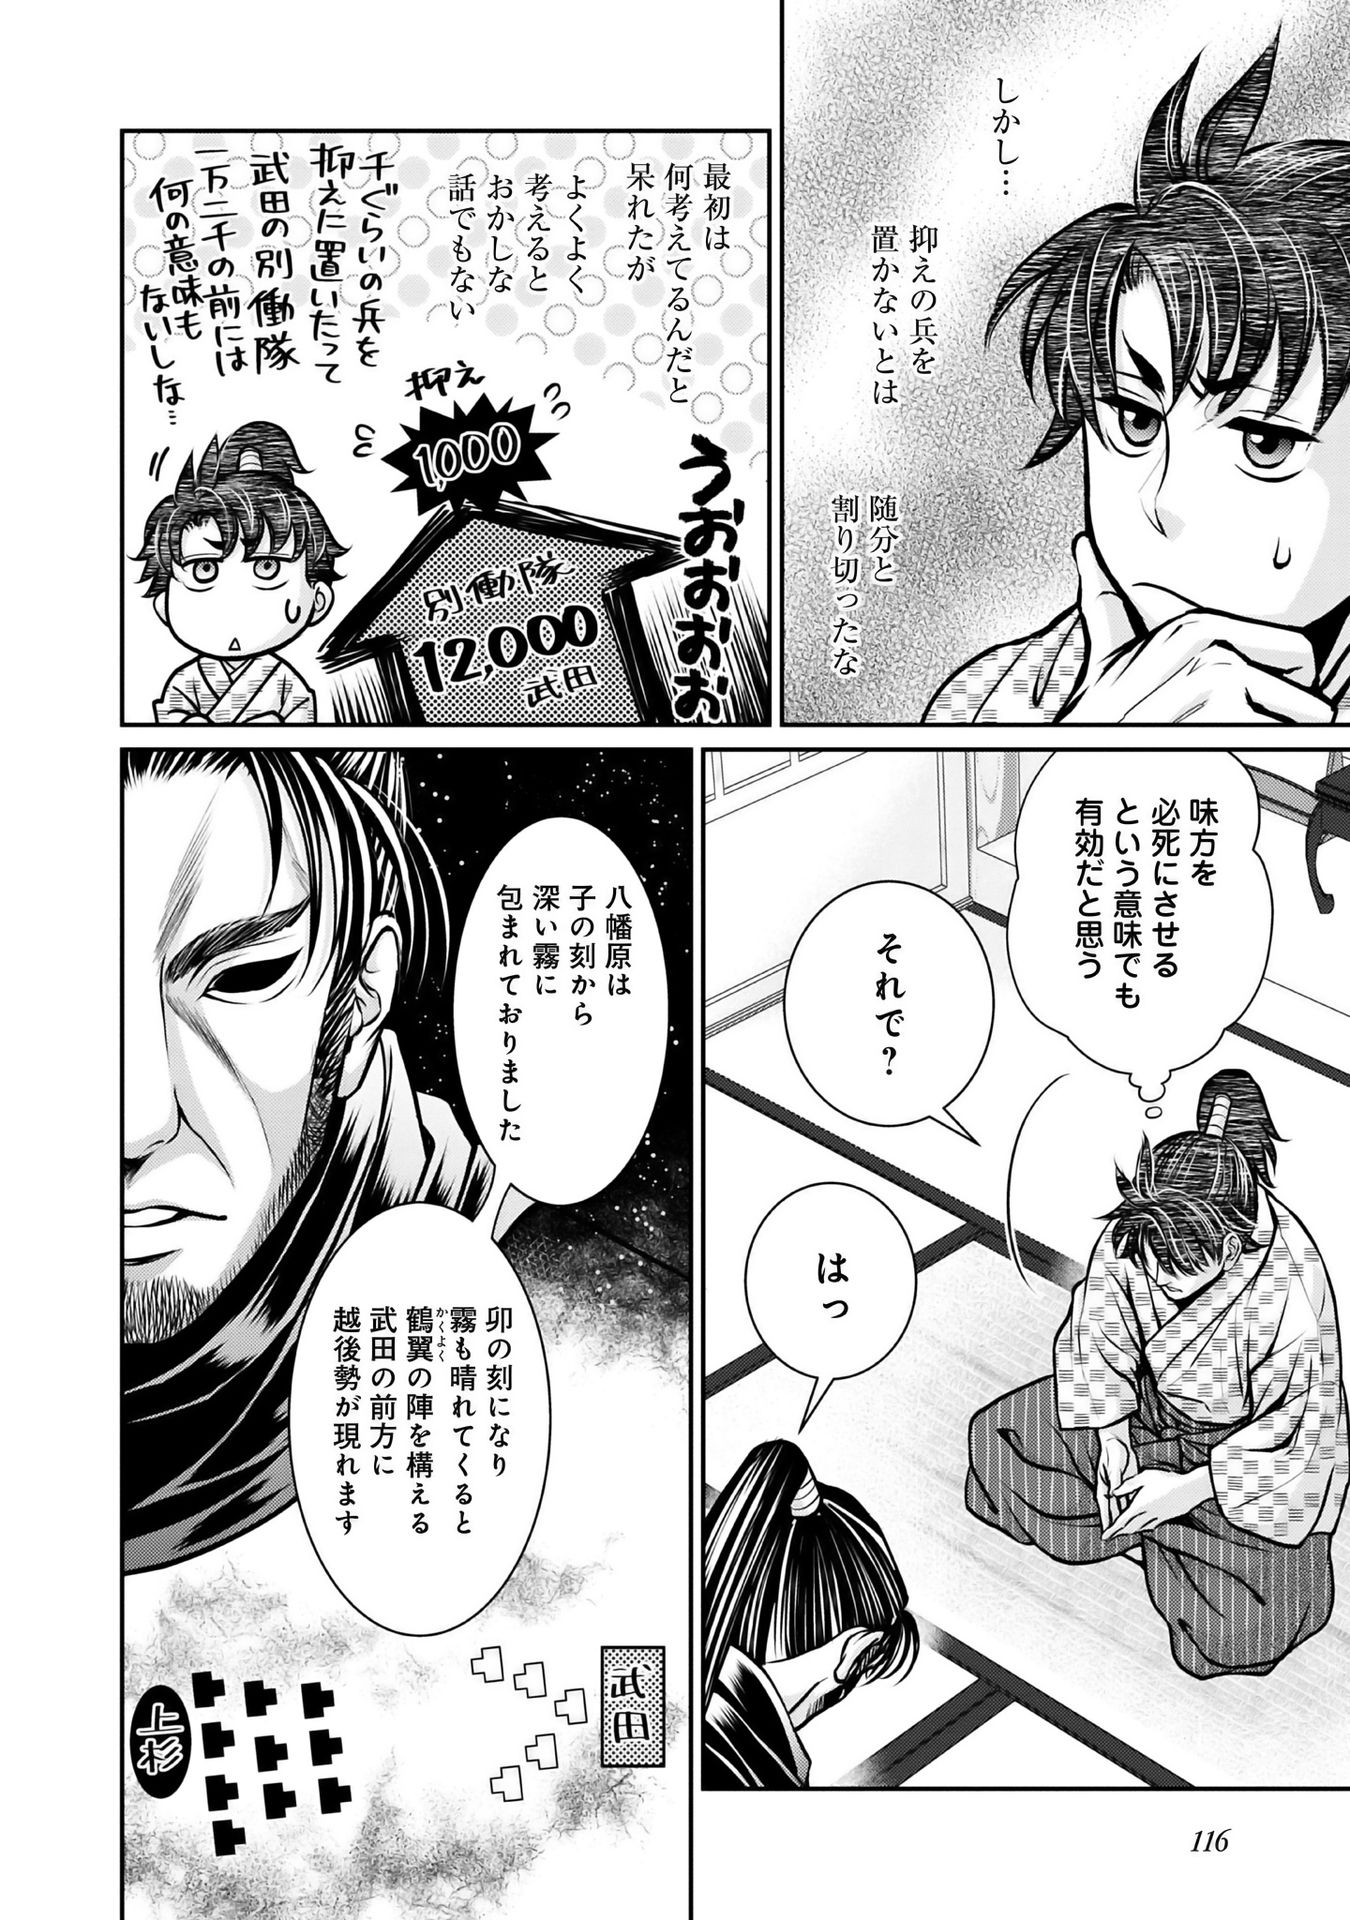 Afumi no Umi – Minamo ga Yureru Toki - Chapter 13 - Page 6